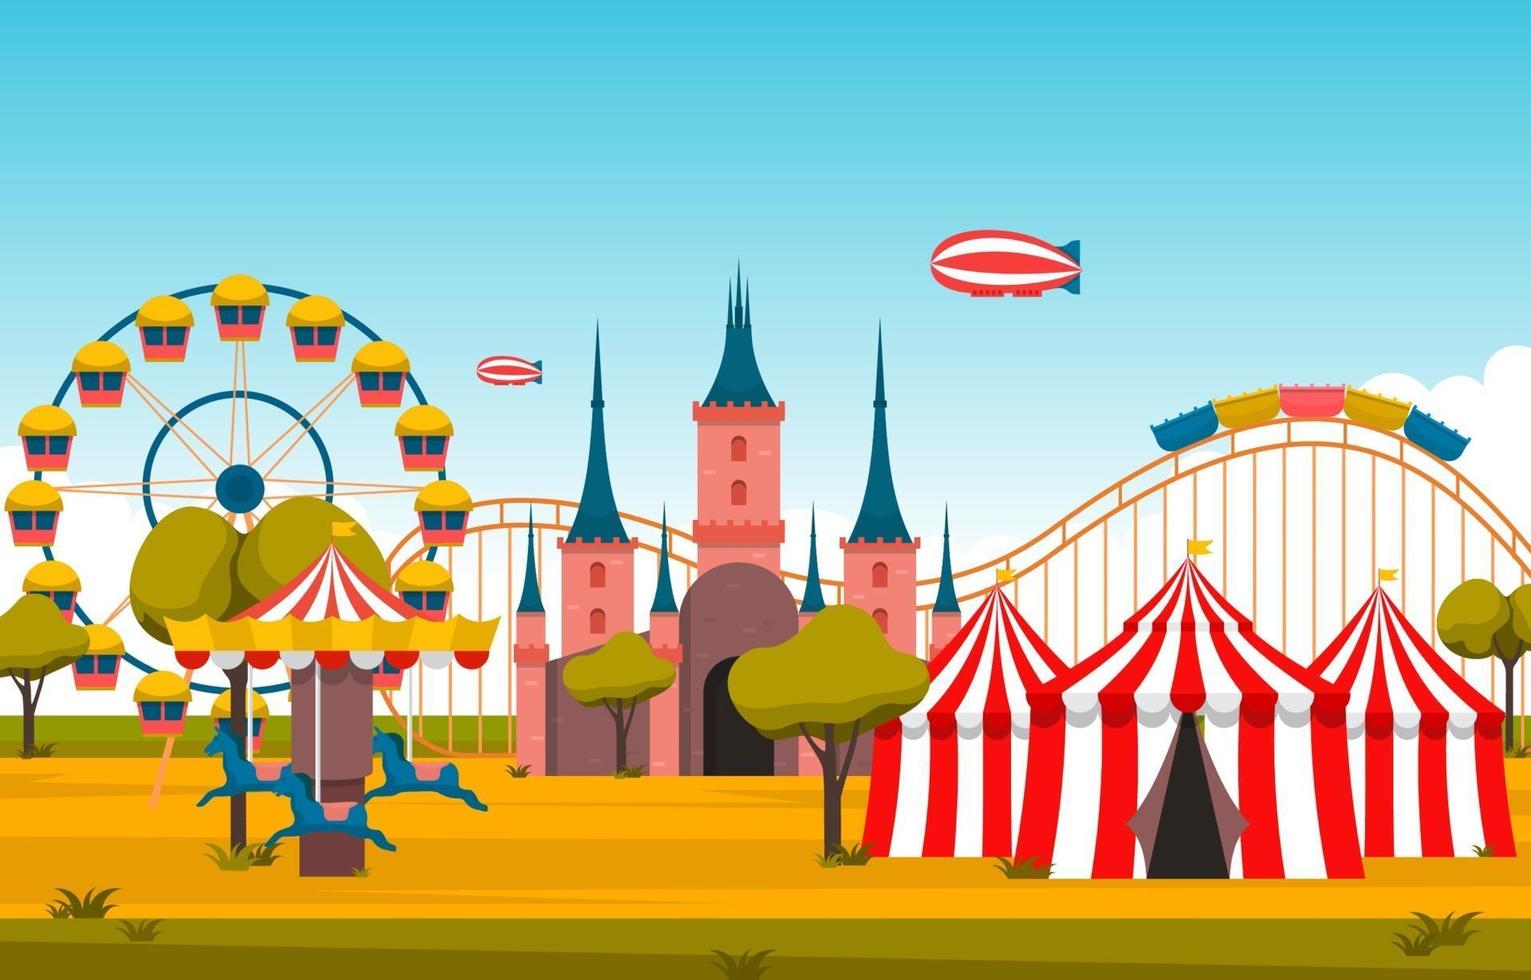 circo e parque de diversões com ilustração de roda gigante vetor